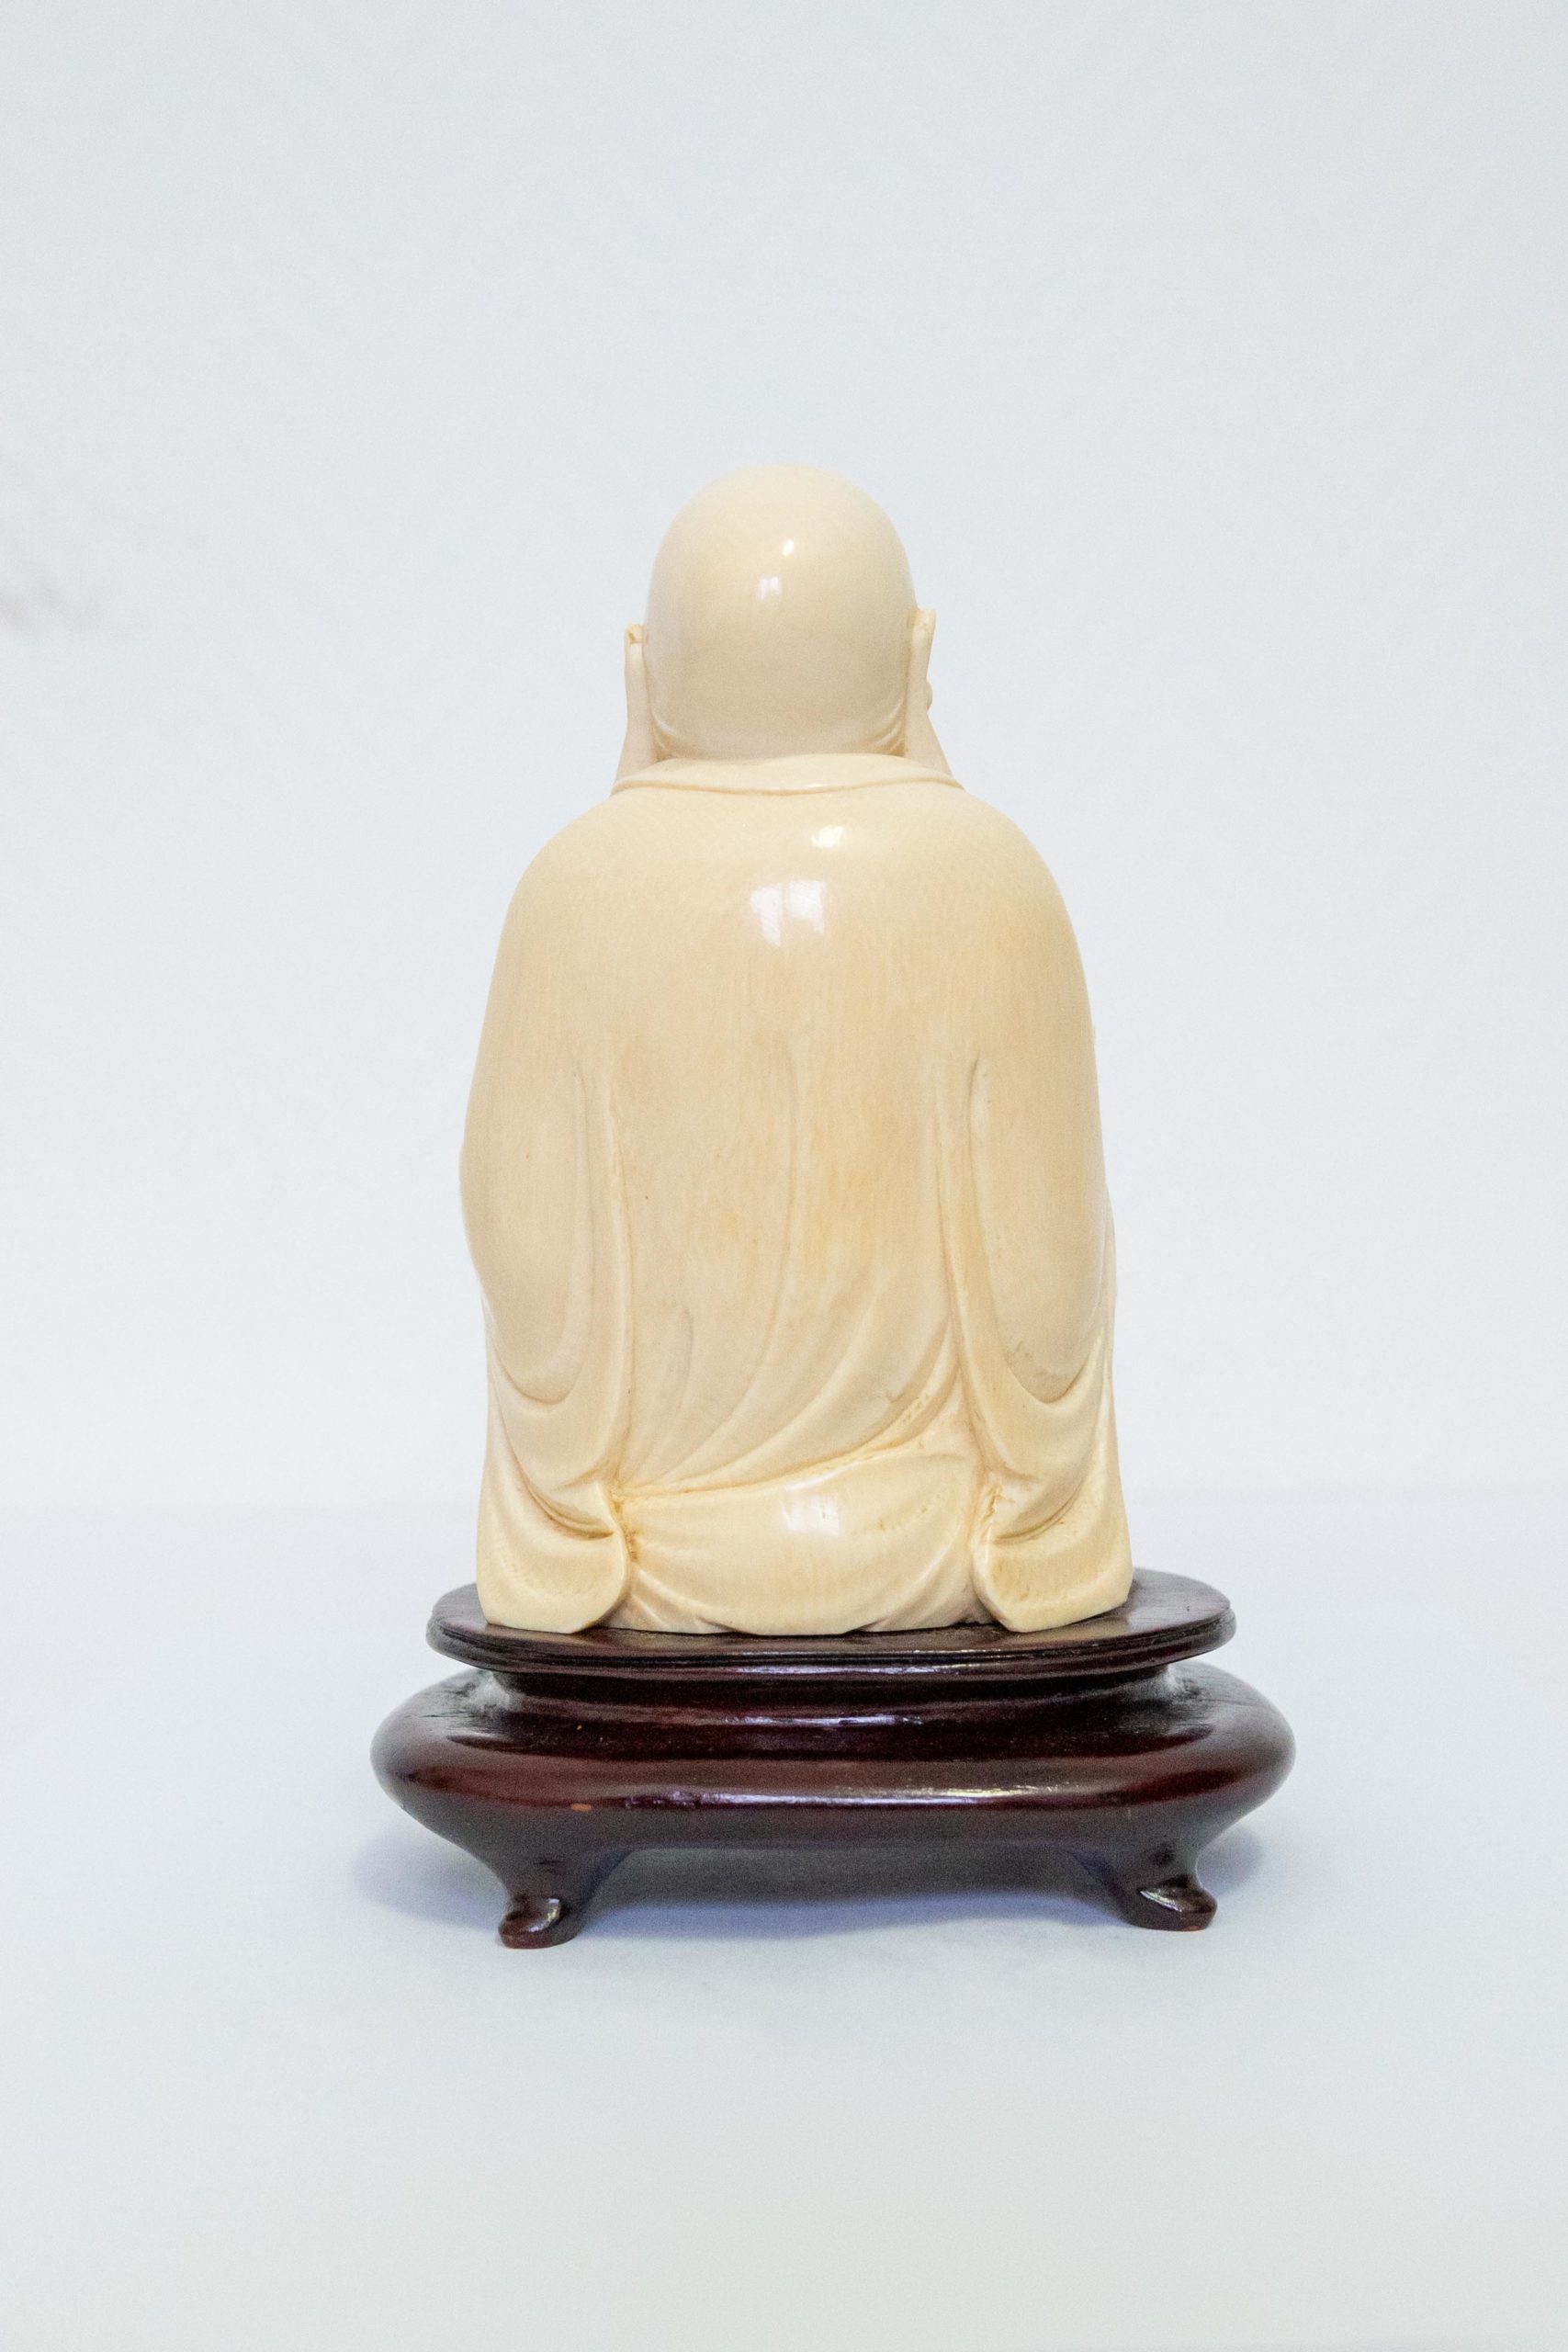 Sculpture-asiatique-bouddha-XIXe-1900-aurore-morisse-antiquaire-aurore-morisse-collection-décoration-antiquités-expertise-affaire-conclue13